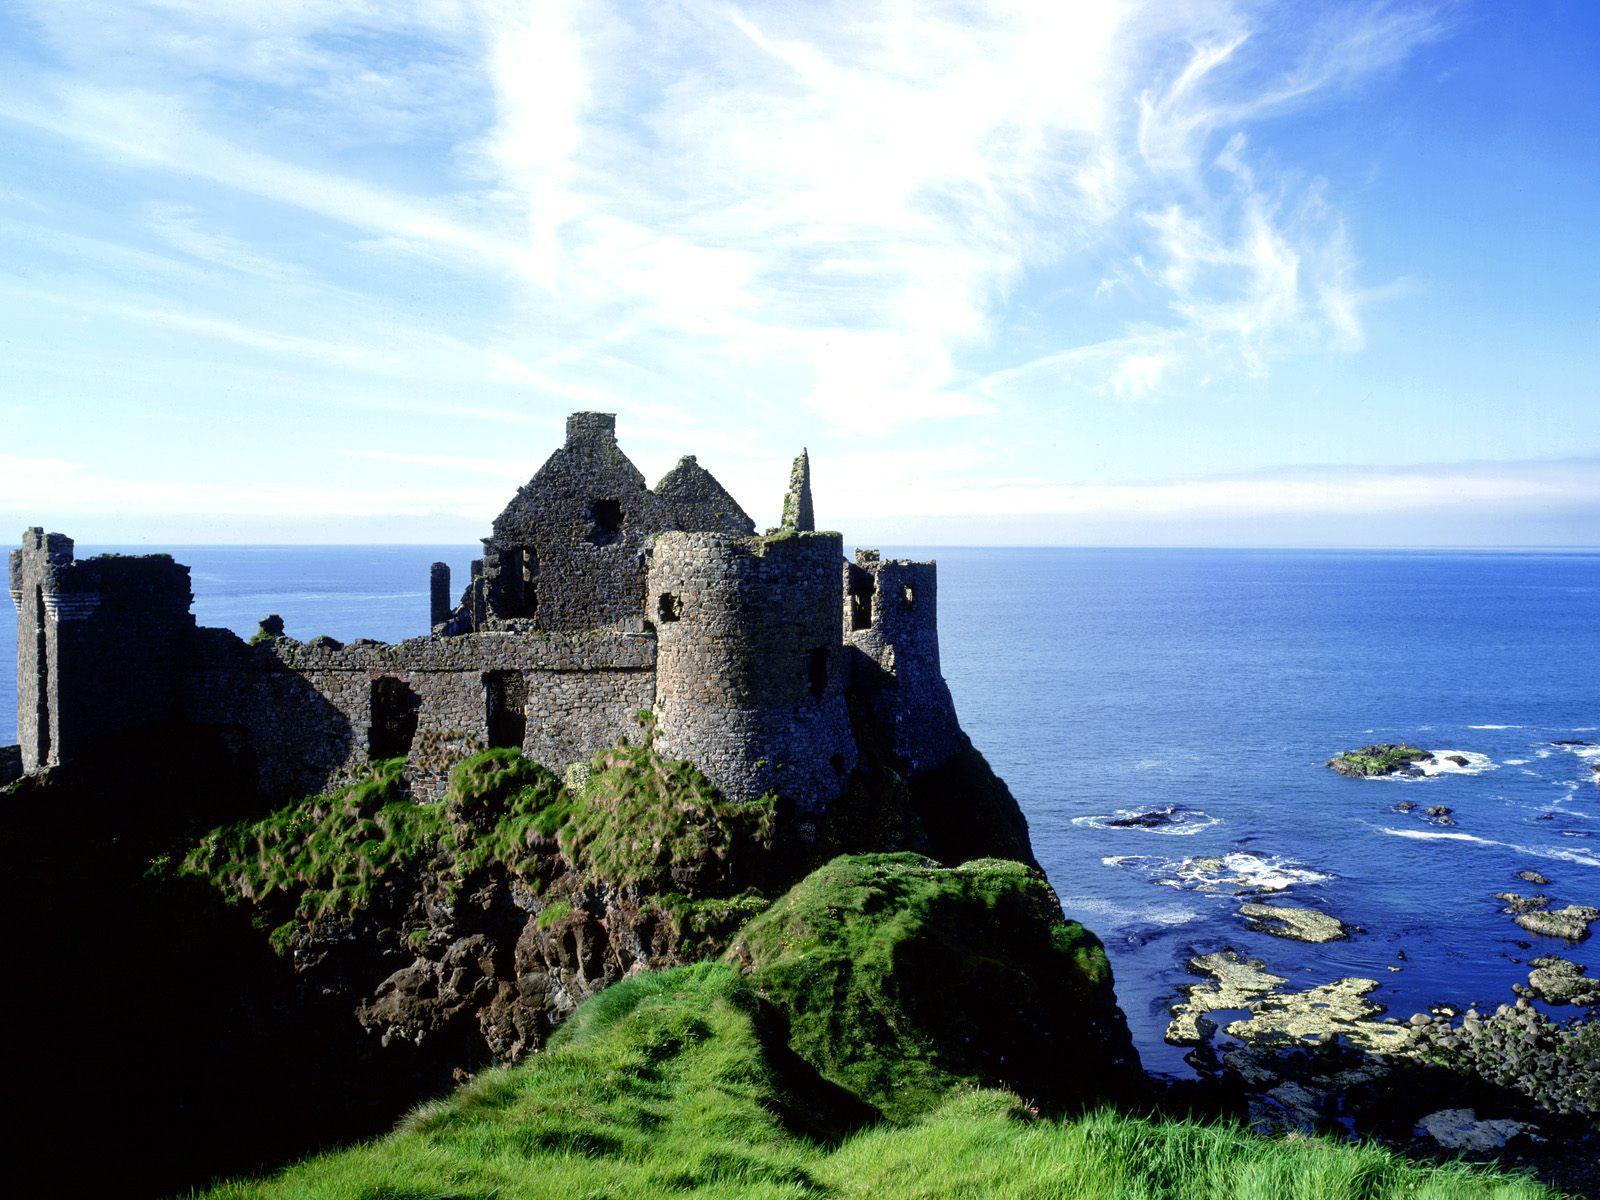 Khám phá Ireland - một đất nước có rất nhiều điều đáng khám phá. Từ các lâu đài cổ kính, những trang trại đầy màu sắc đến những bãi biển đầy nắng vàng và những con đường đẹp như mơ. Nhấp vào hình ảnh để bắt đầu hành trình khám phá Ireland nhé!